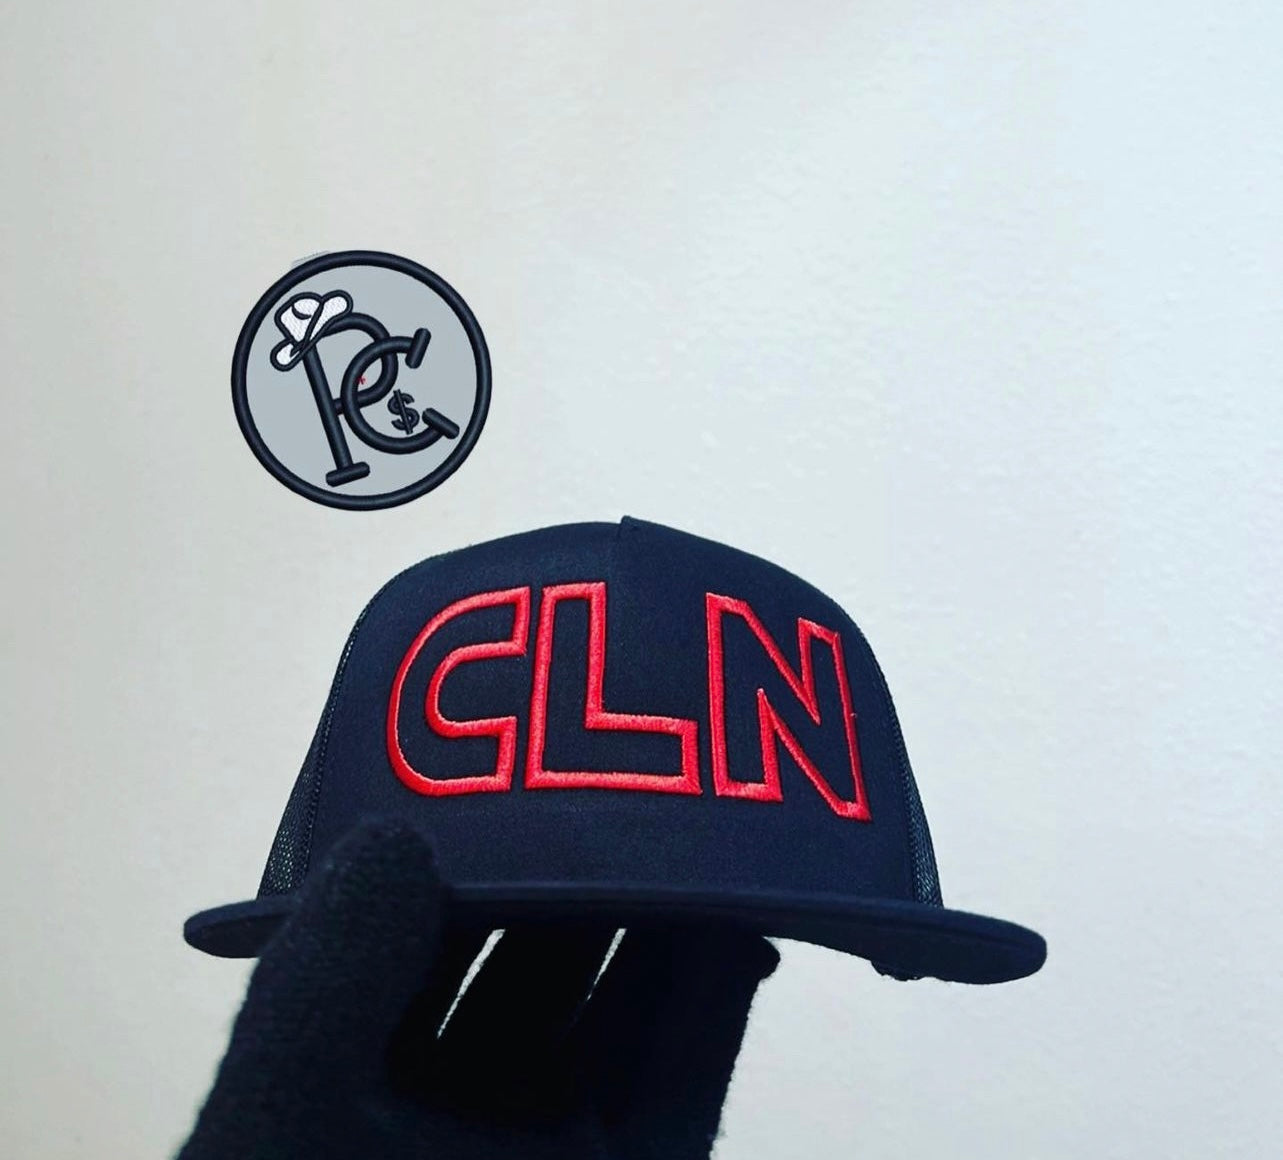 CLN Official Store, Online Shop